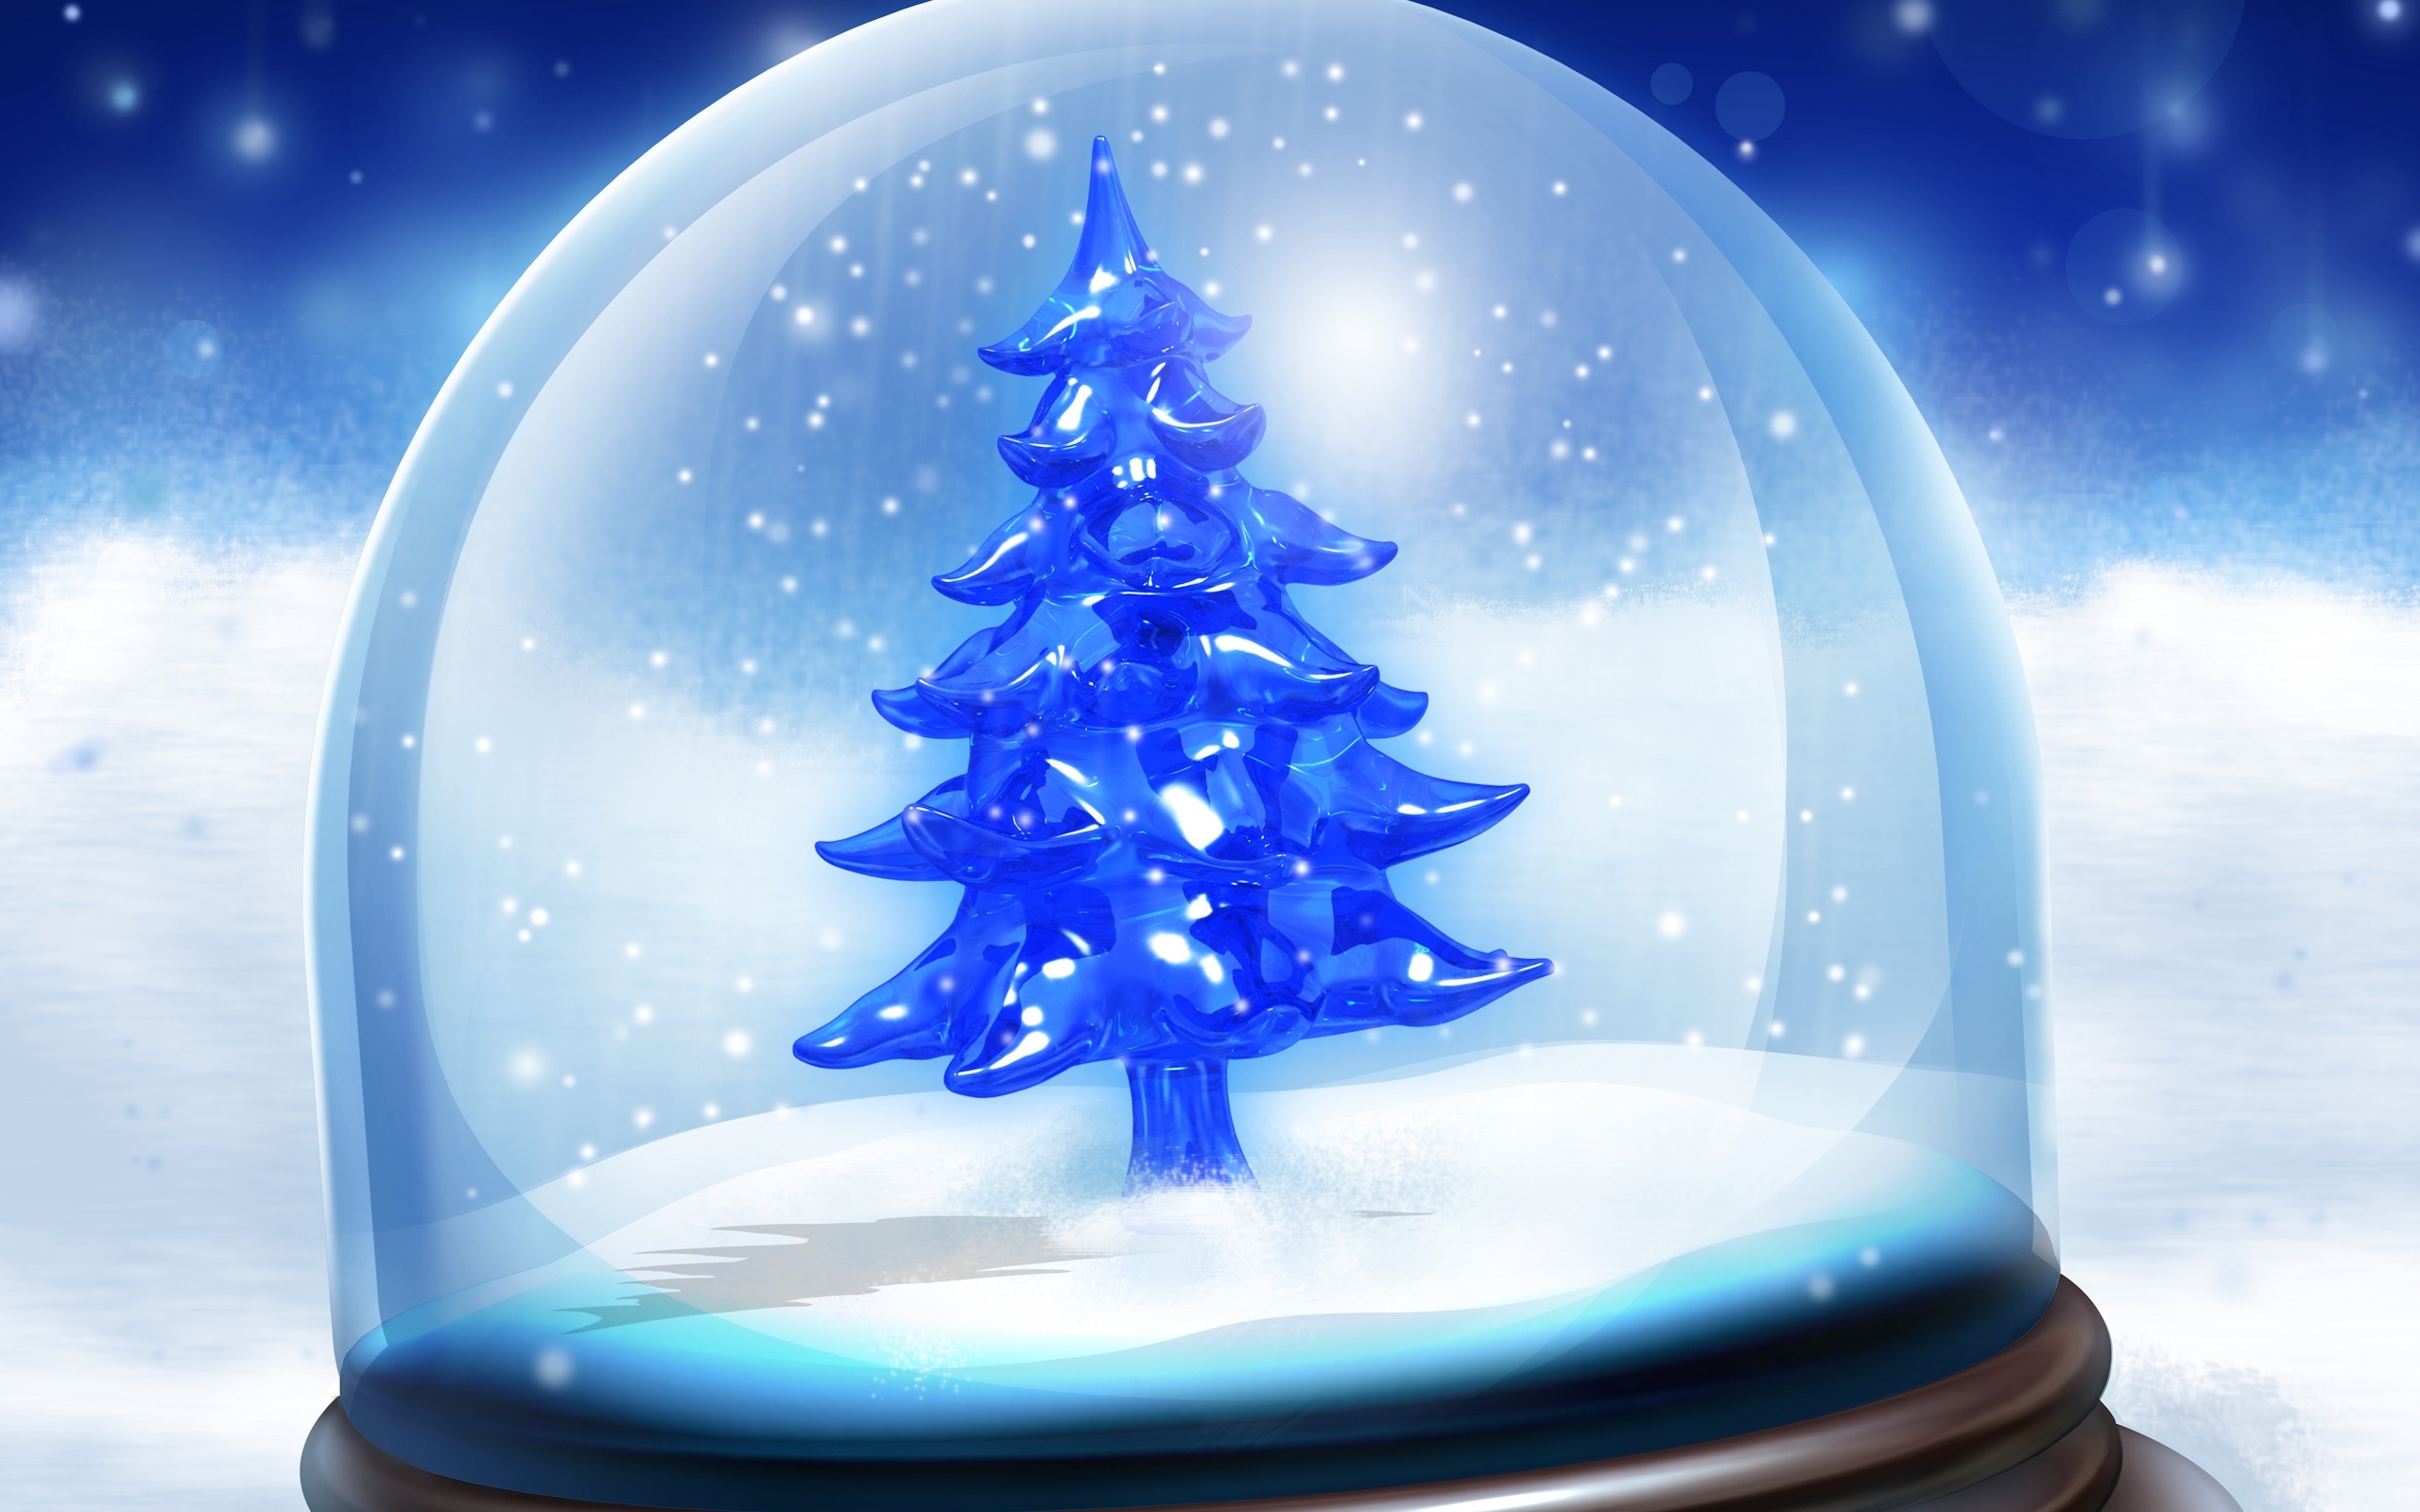 fir trees, winter, background, snow, blue